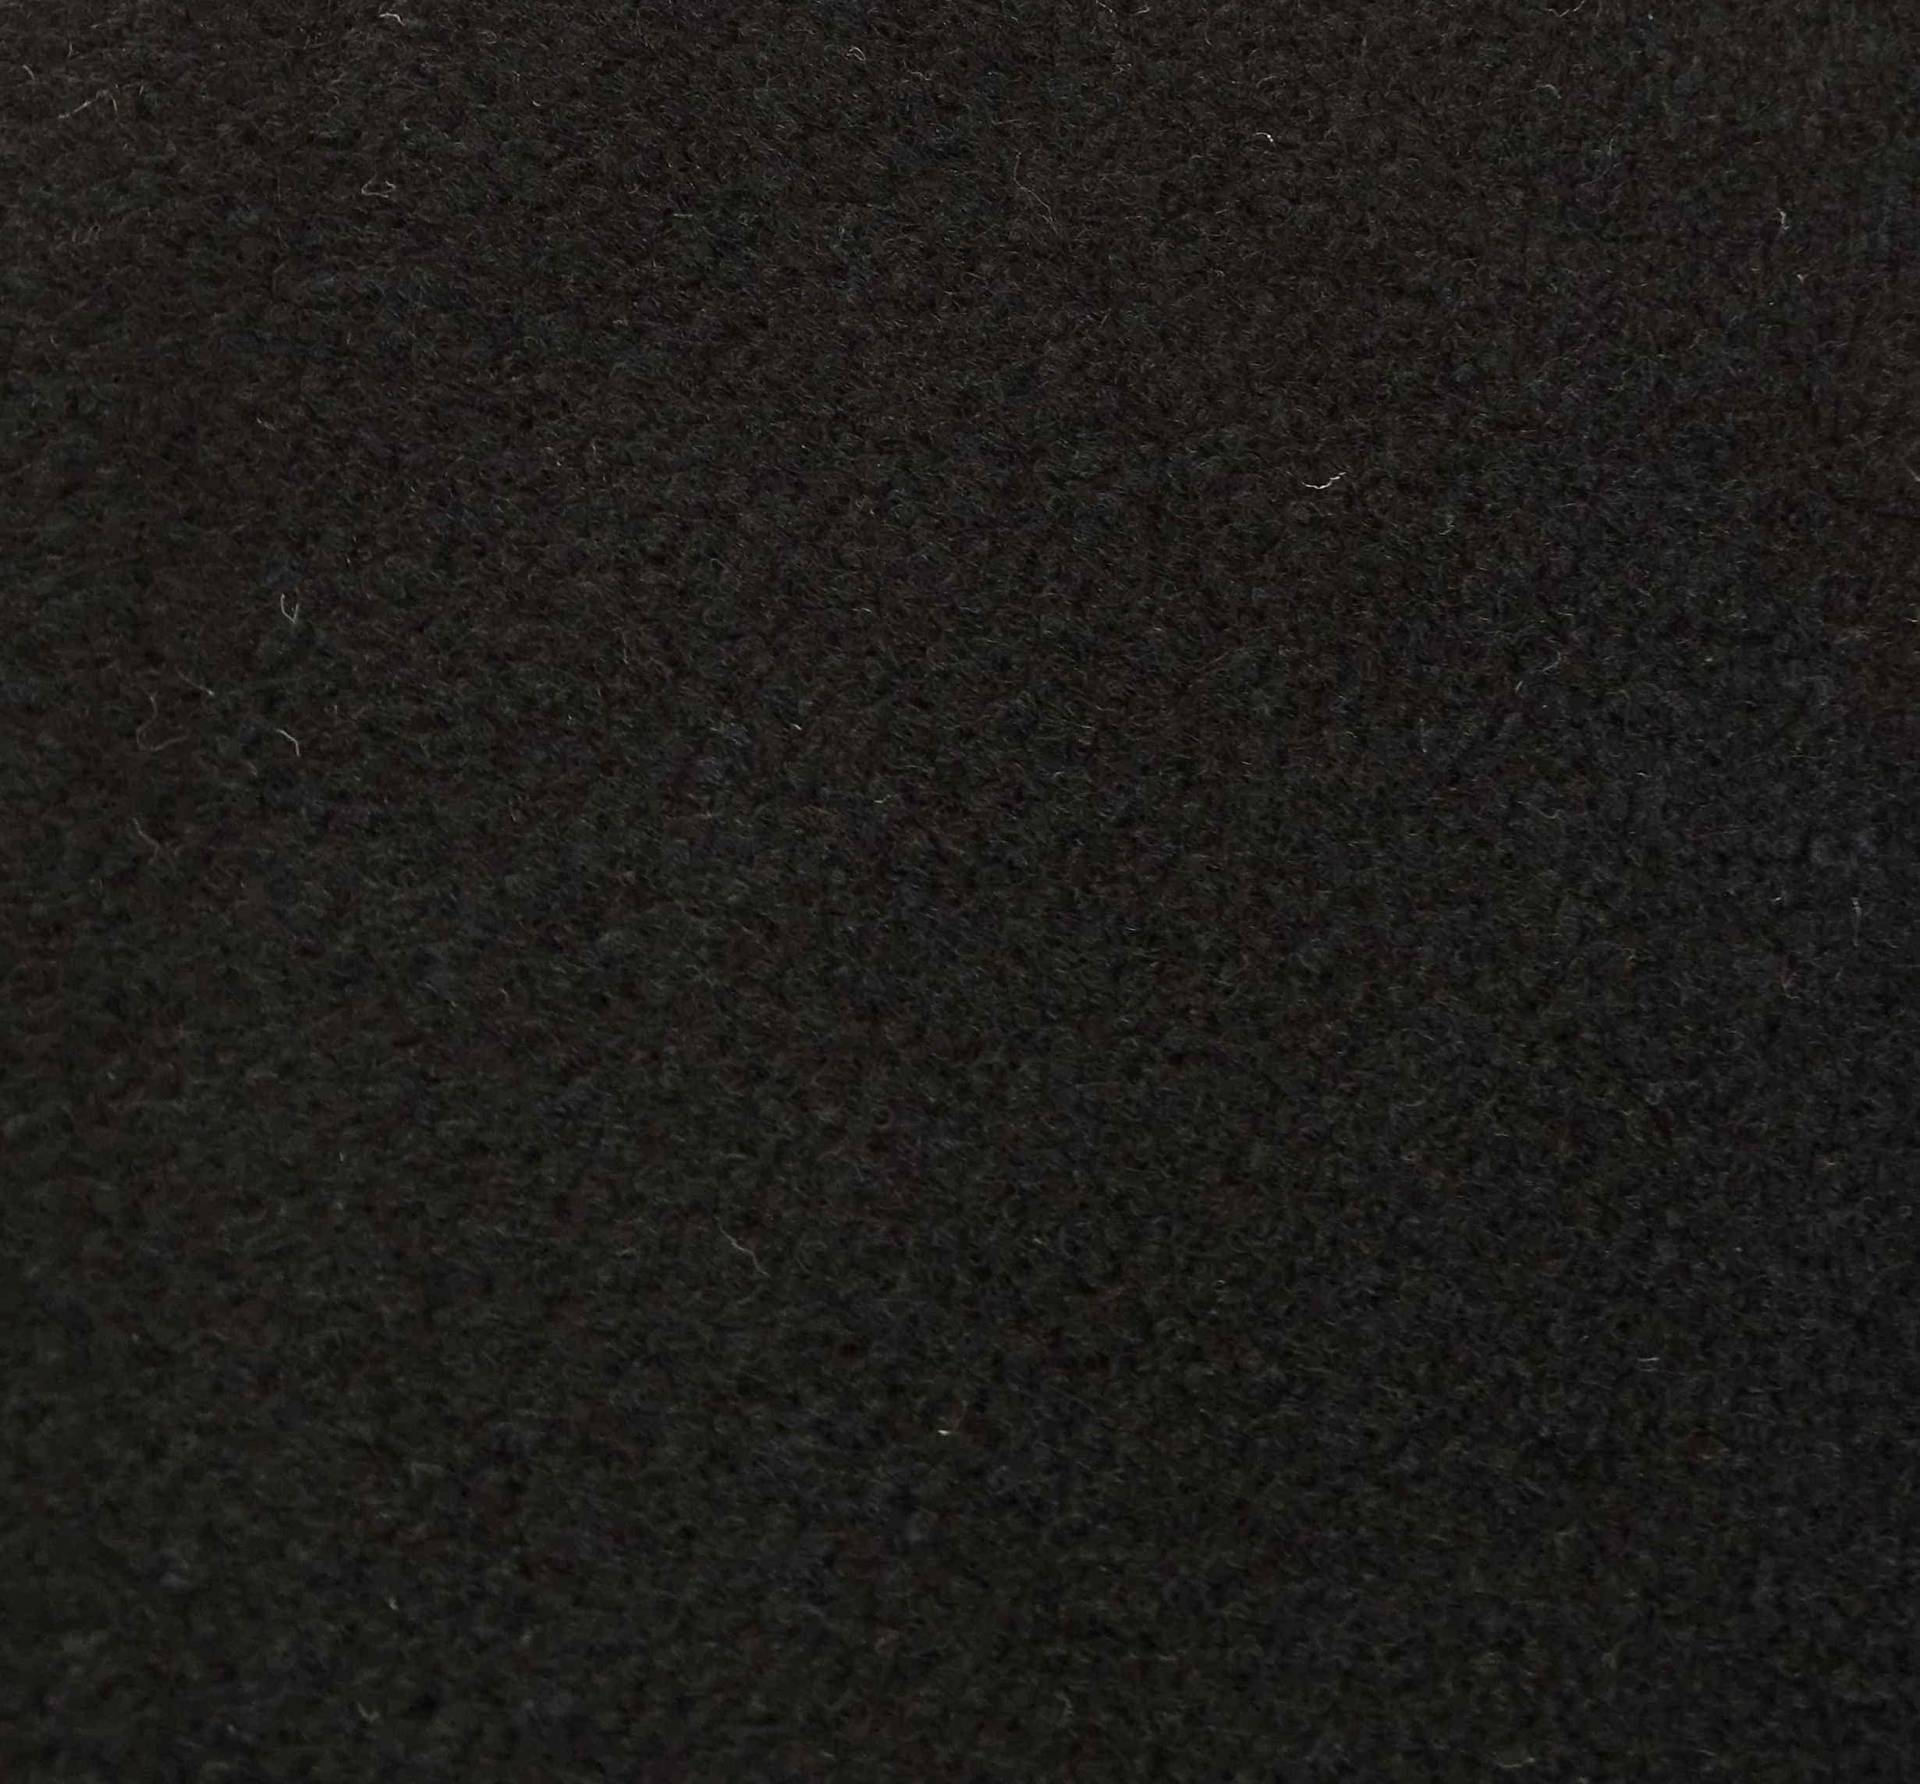 Nadelfilz Extra-Flex Meterware Restauration Innenraumverkleidung Instandhaltung Camperausbau 206 cm Breite (206 x 1100 cm, schwarz) von Mertex